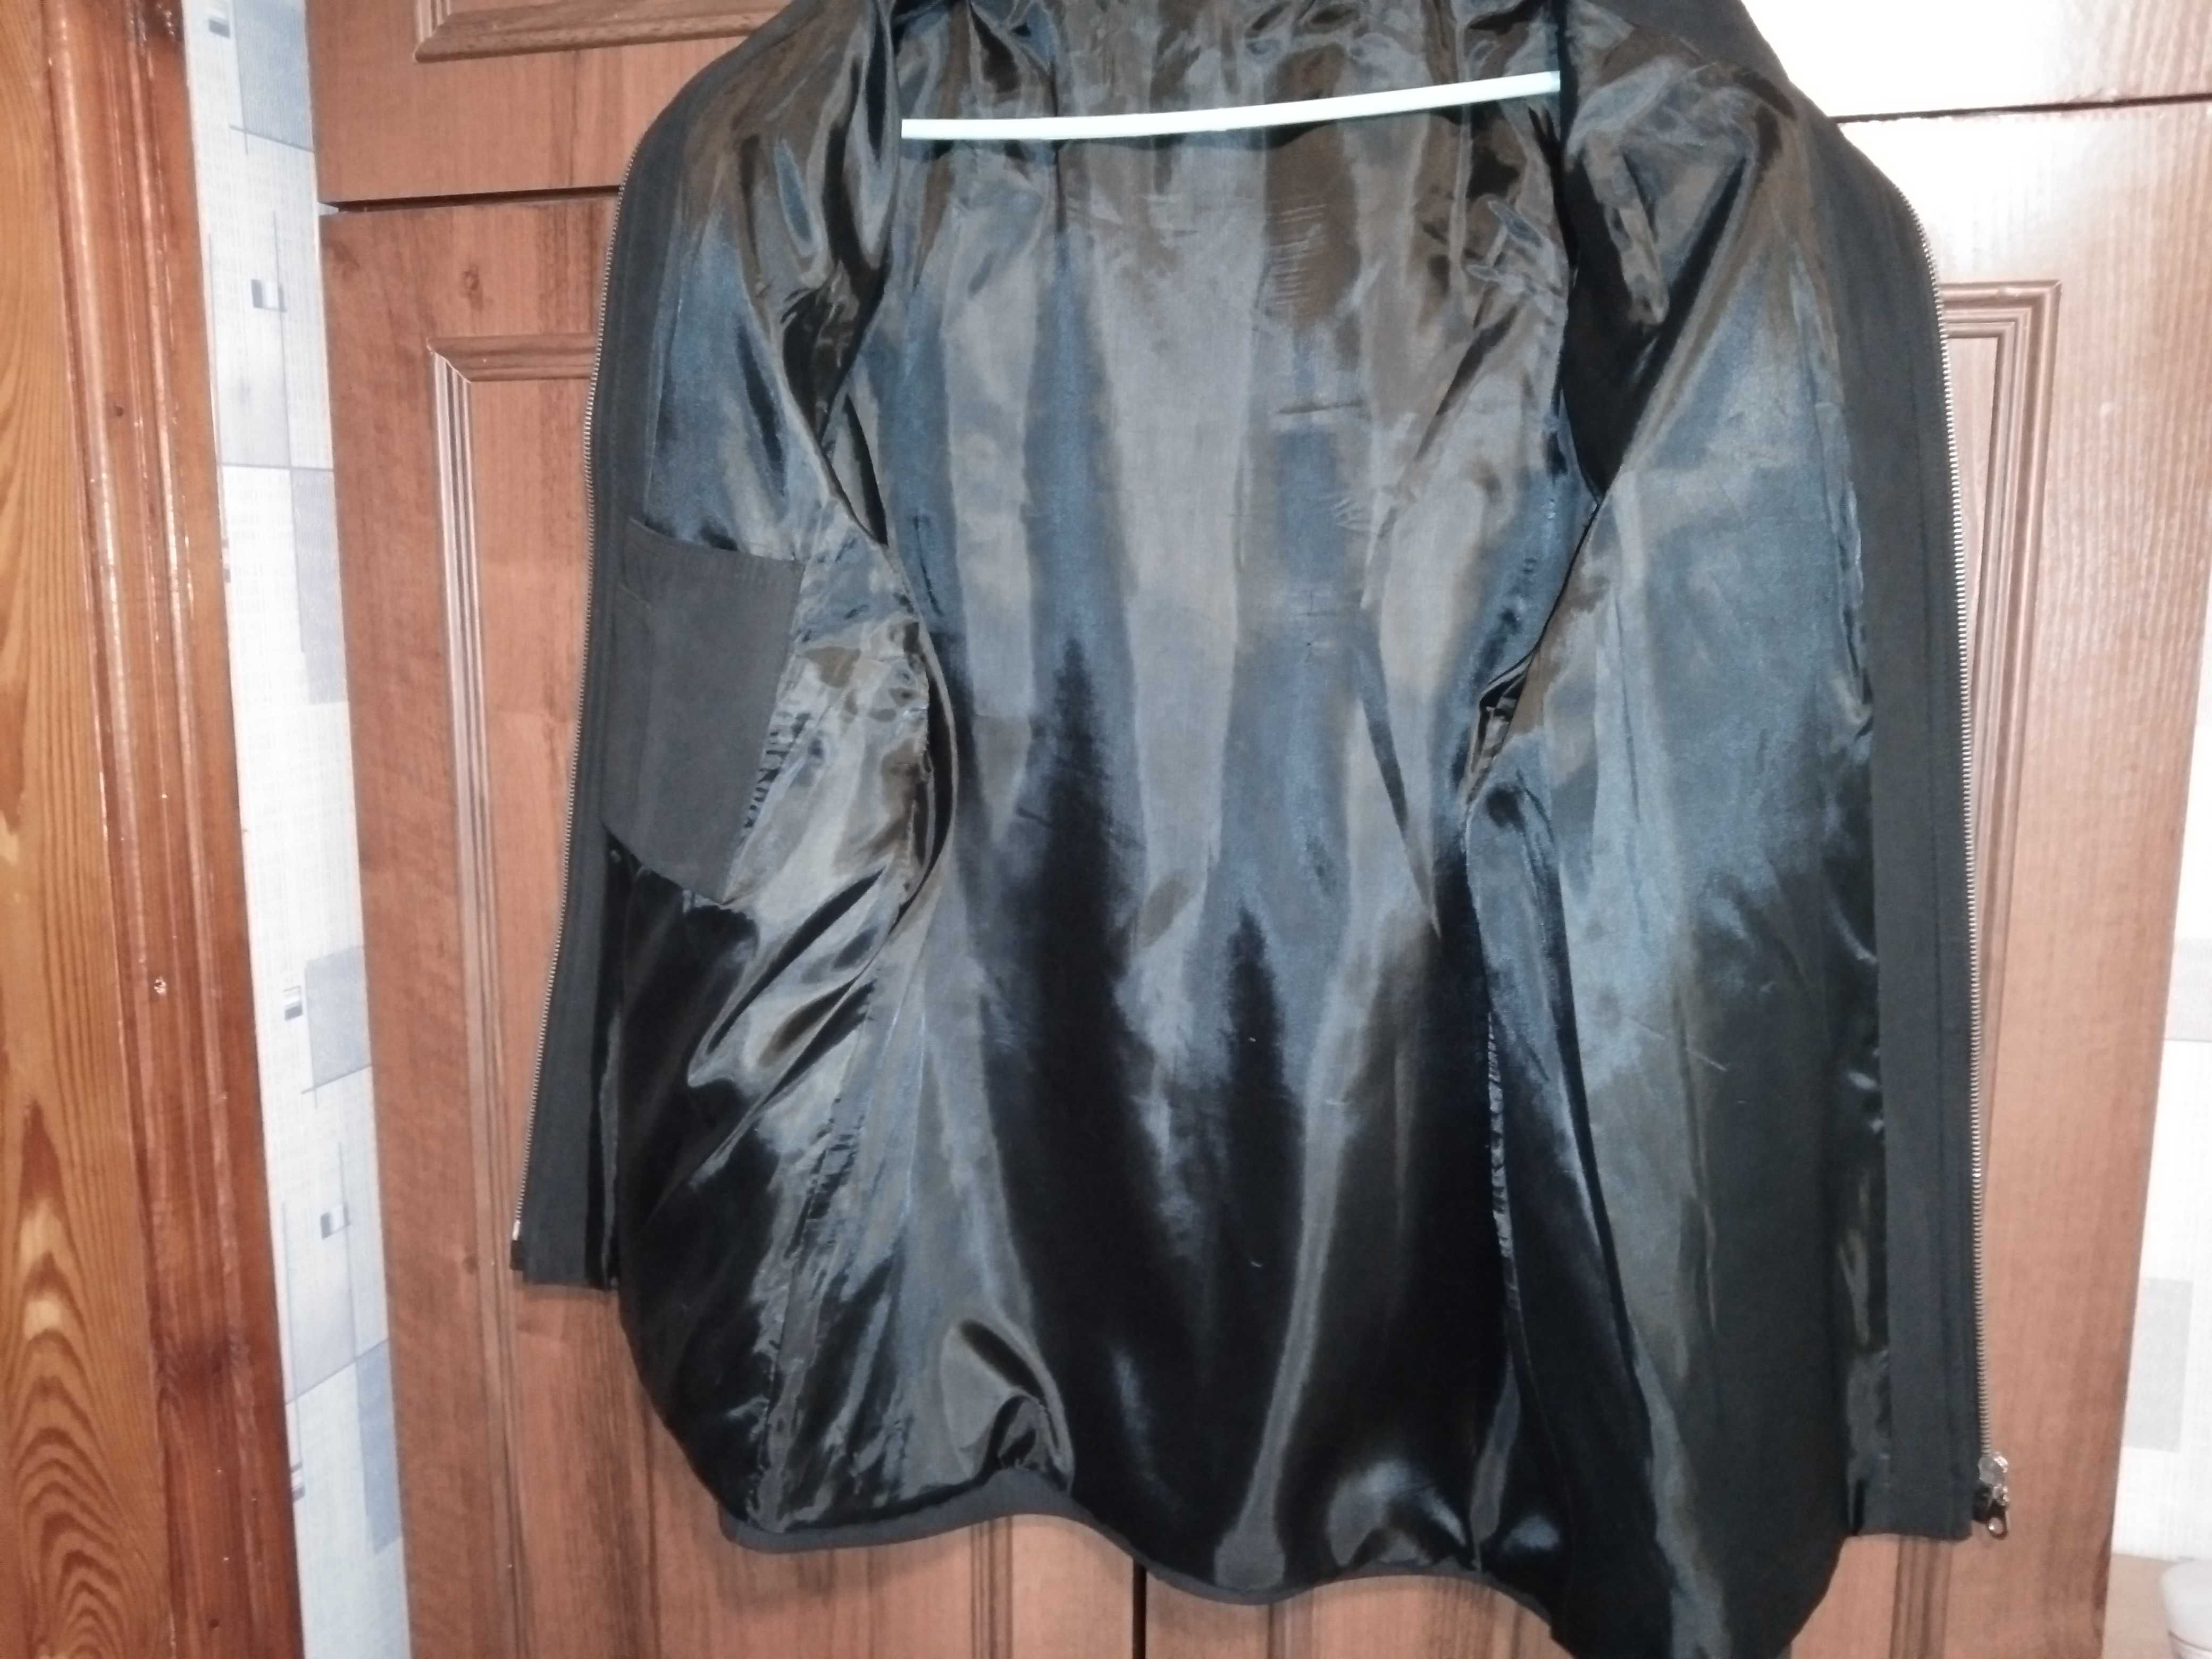 Куртка ветровка(пиджак) подростковая р. М 46-48, отличное состояние